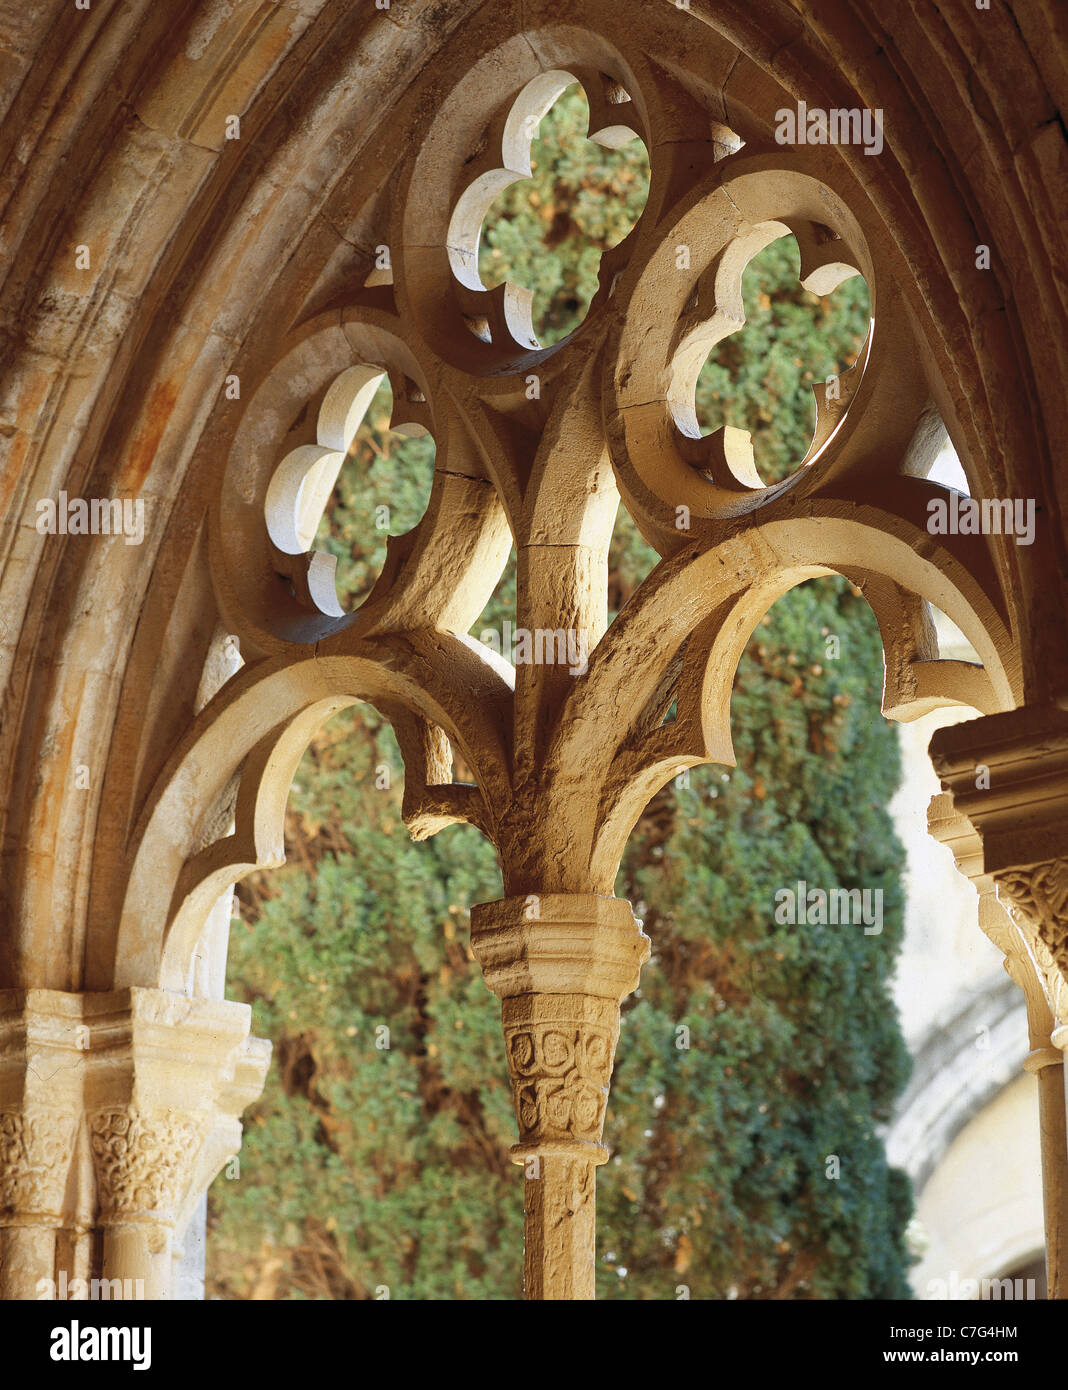 Spagna. La Catalogna. Royal Abbazia di Santa Maria de Poblet. Xii secolo. Chiostro Gotico finestra. Foto Stock